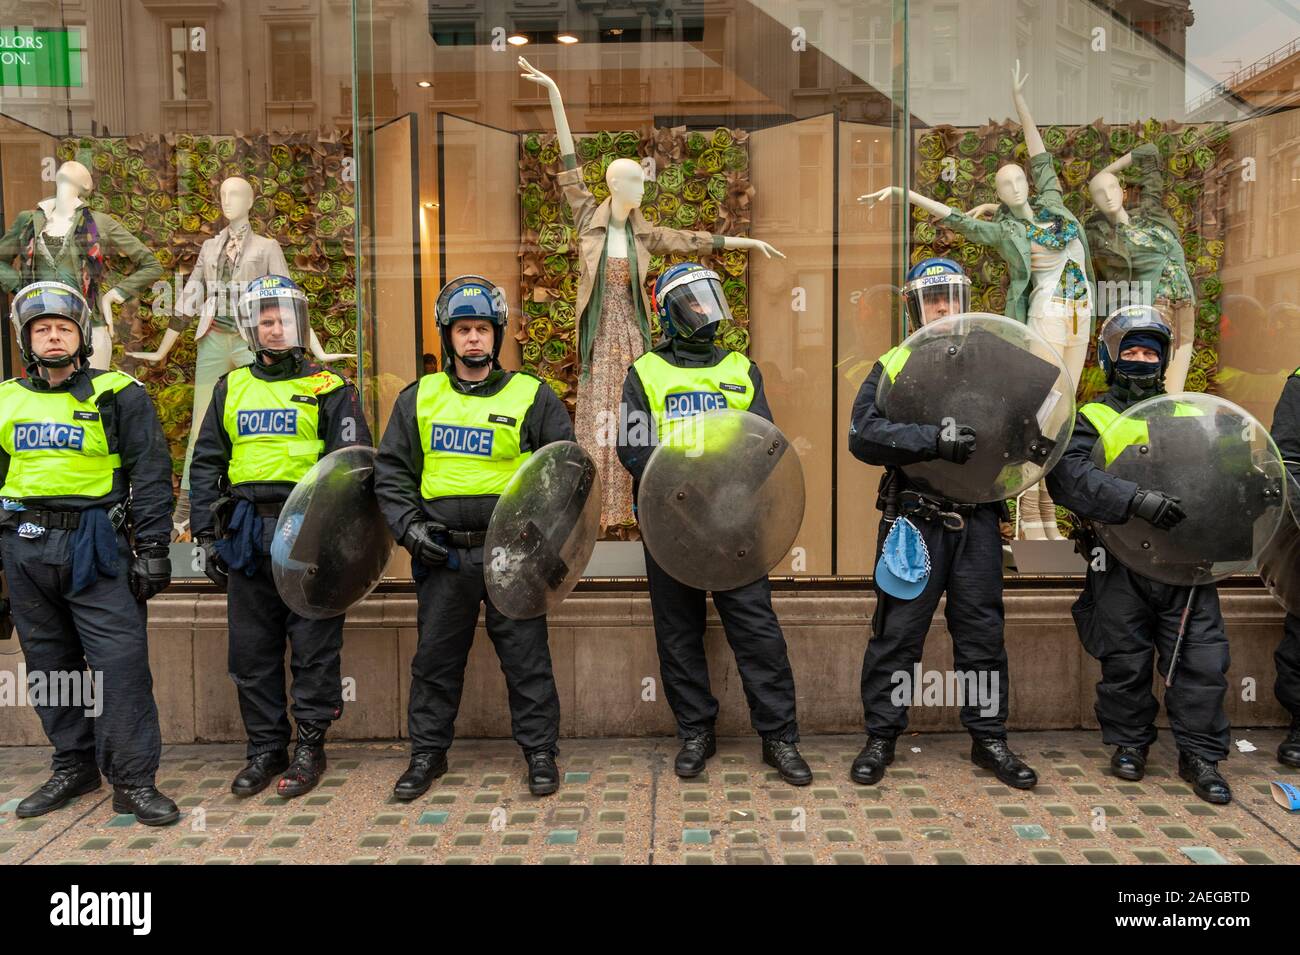 Linie der Bereitschaftspolizei schutz Central London shopfront während der Demonstration, Großbritannien Stockfoto